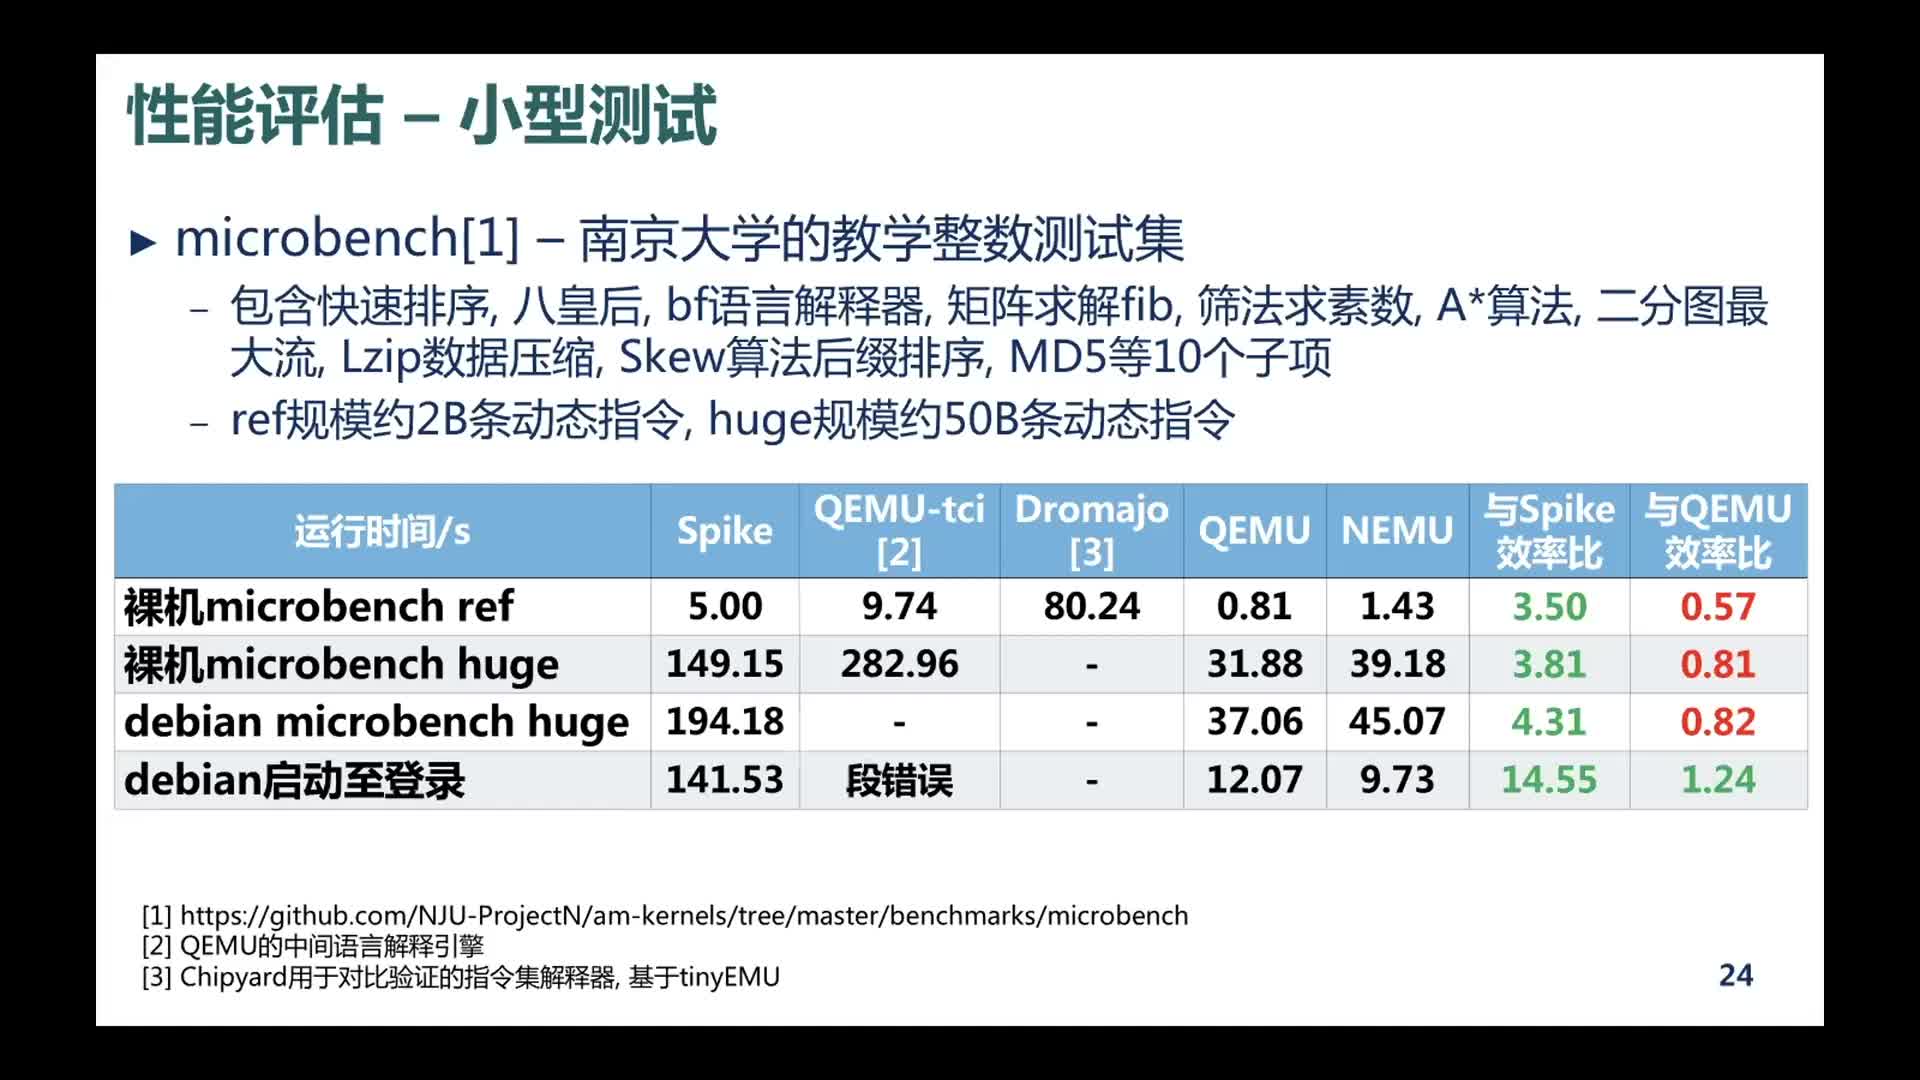 【余子濠】NEMU：一个效率接近QEMU的高性能解释器 - 第一届 RISC-V 中国峰会2